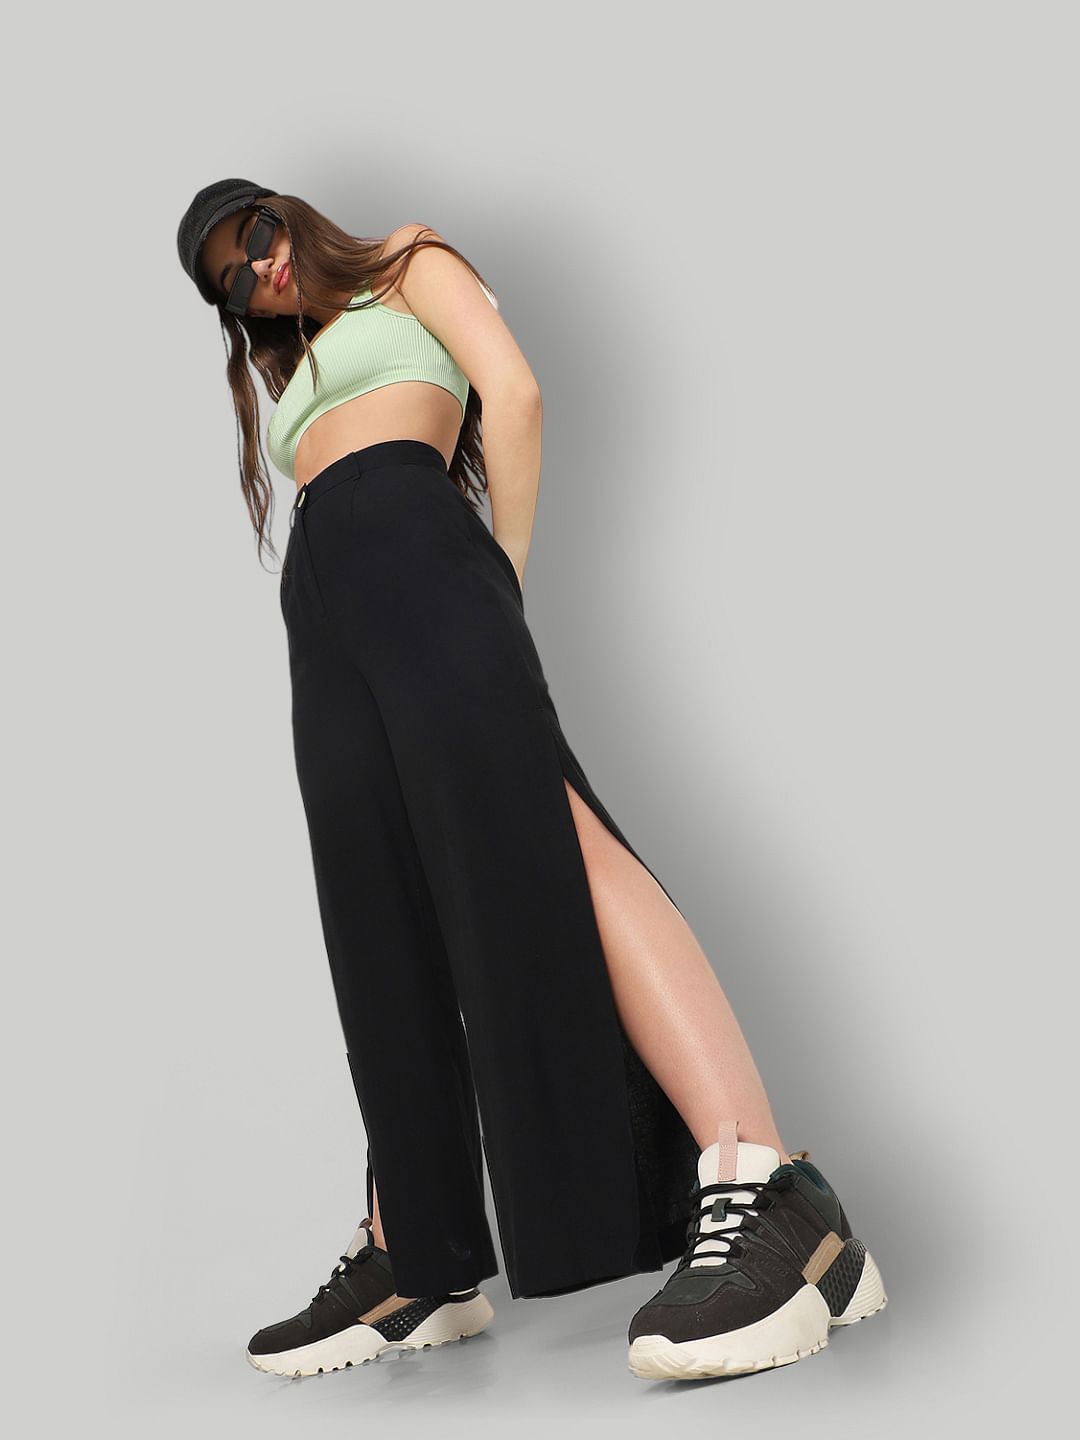 Buy Black Trousers  Pants for Women by Zastraa Online  Ajiocom